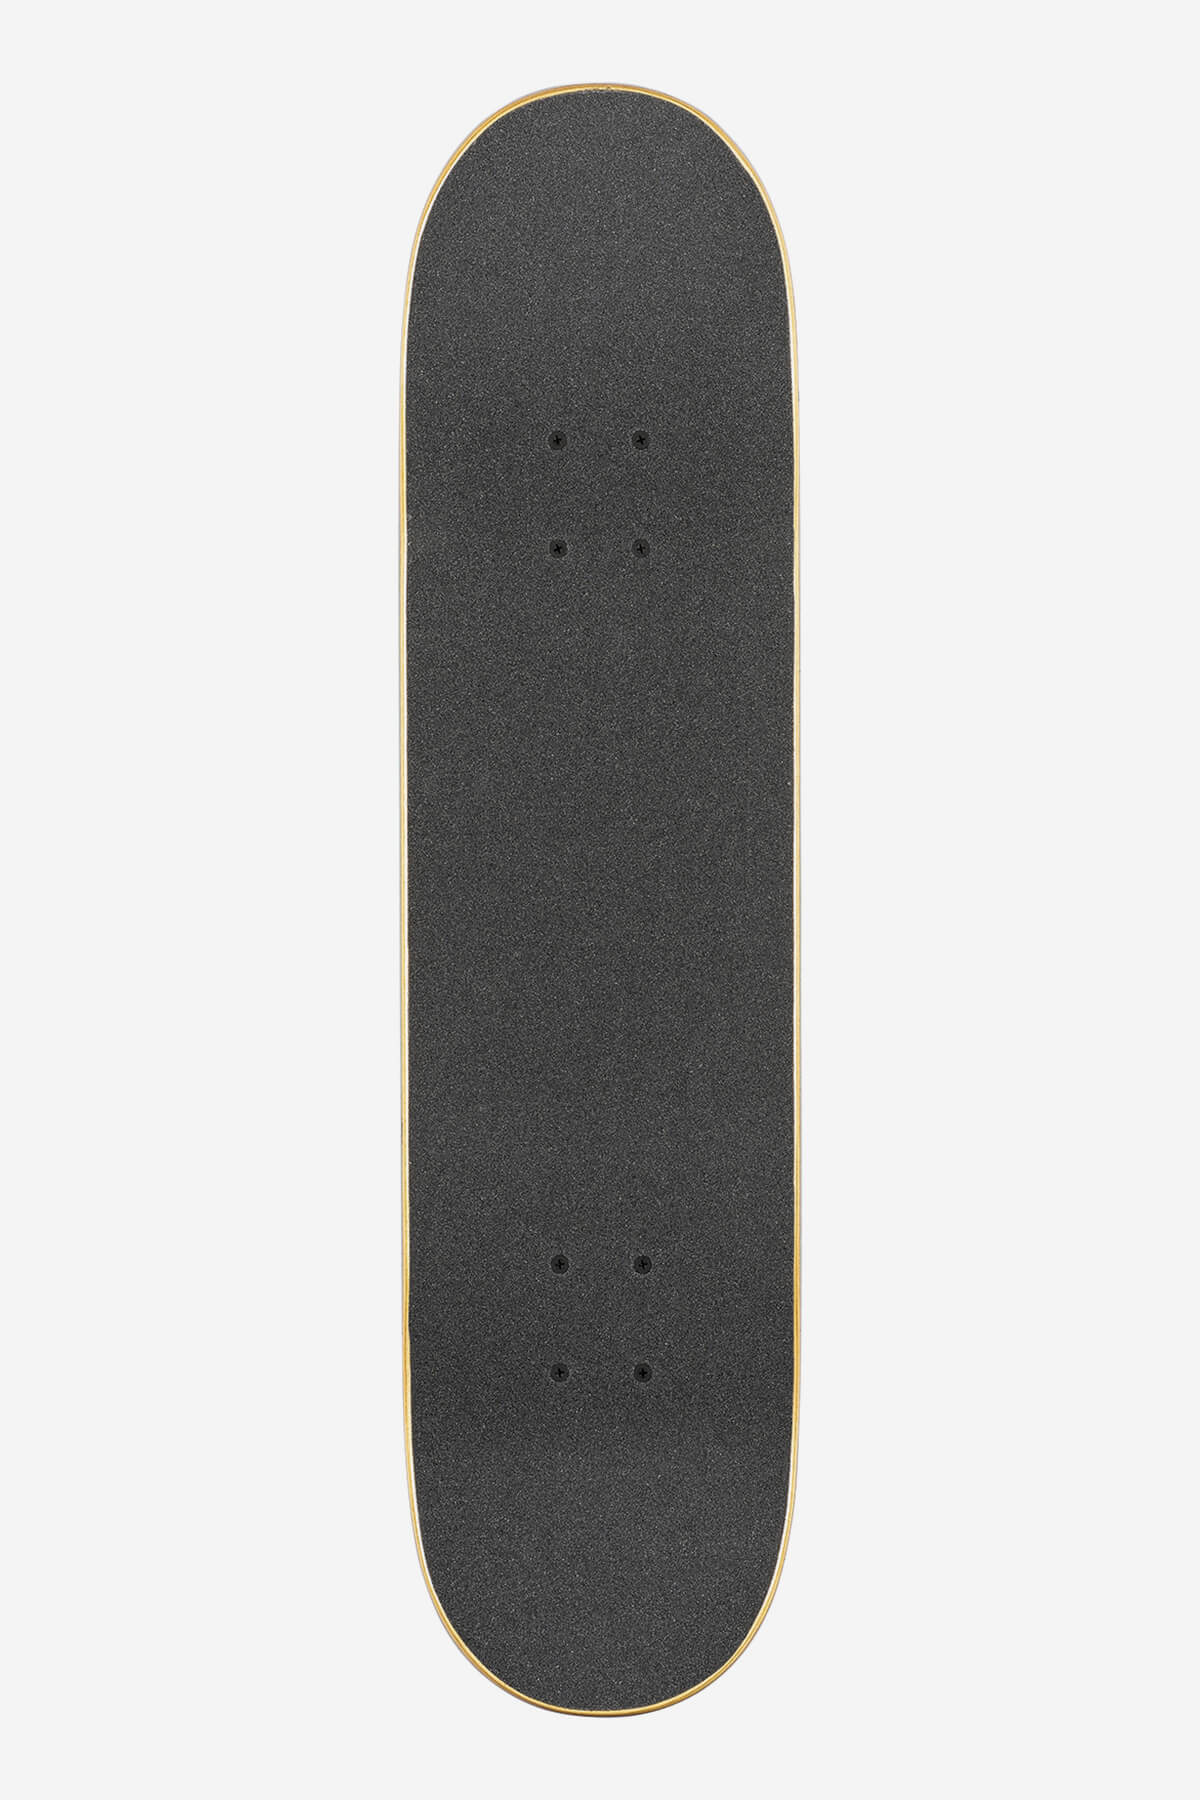 Globe - G1 Full On - Tijger Camo - 8,0" Compleet Skateboard